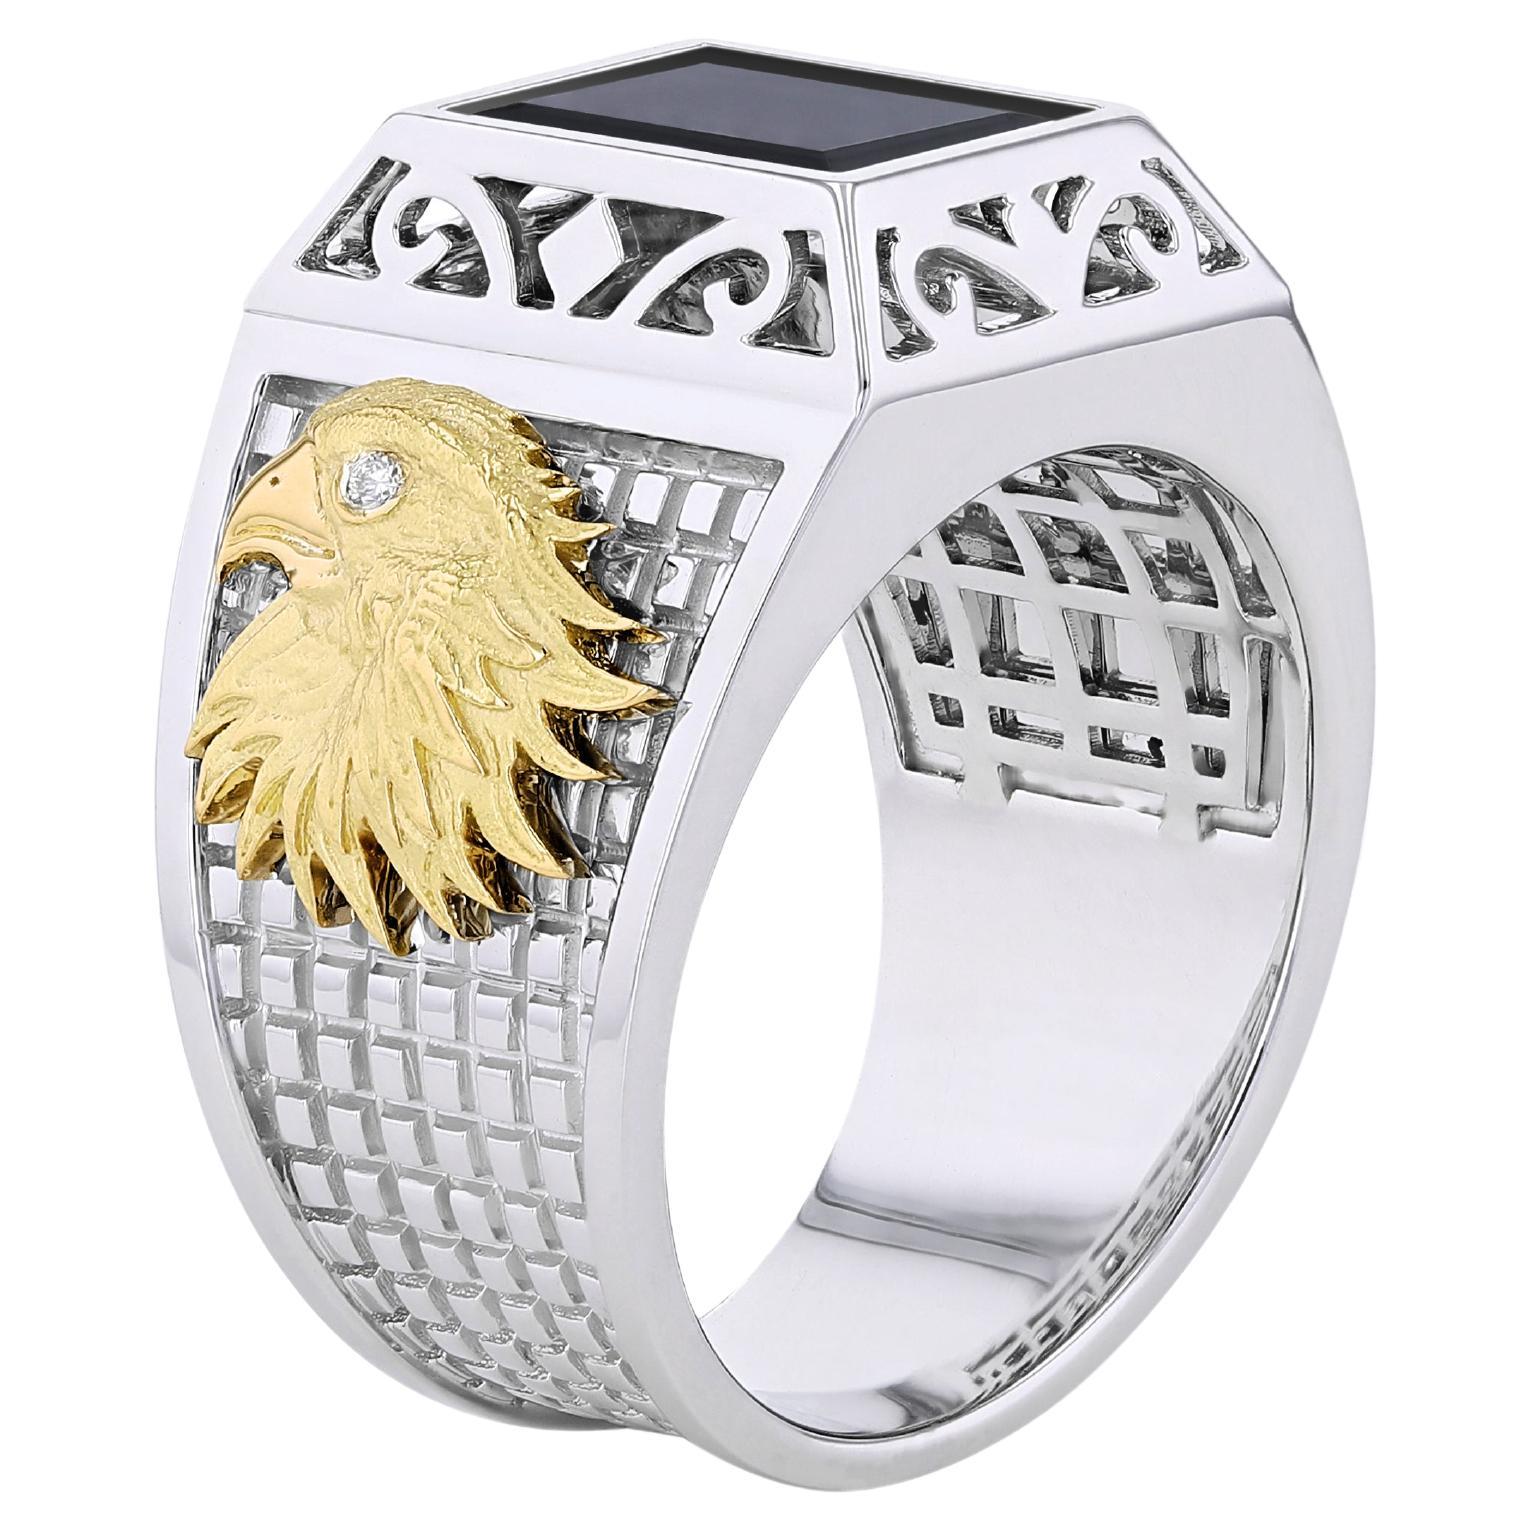 TOKTAM 18k White Gold Men's Rings Onyx Signet Ring